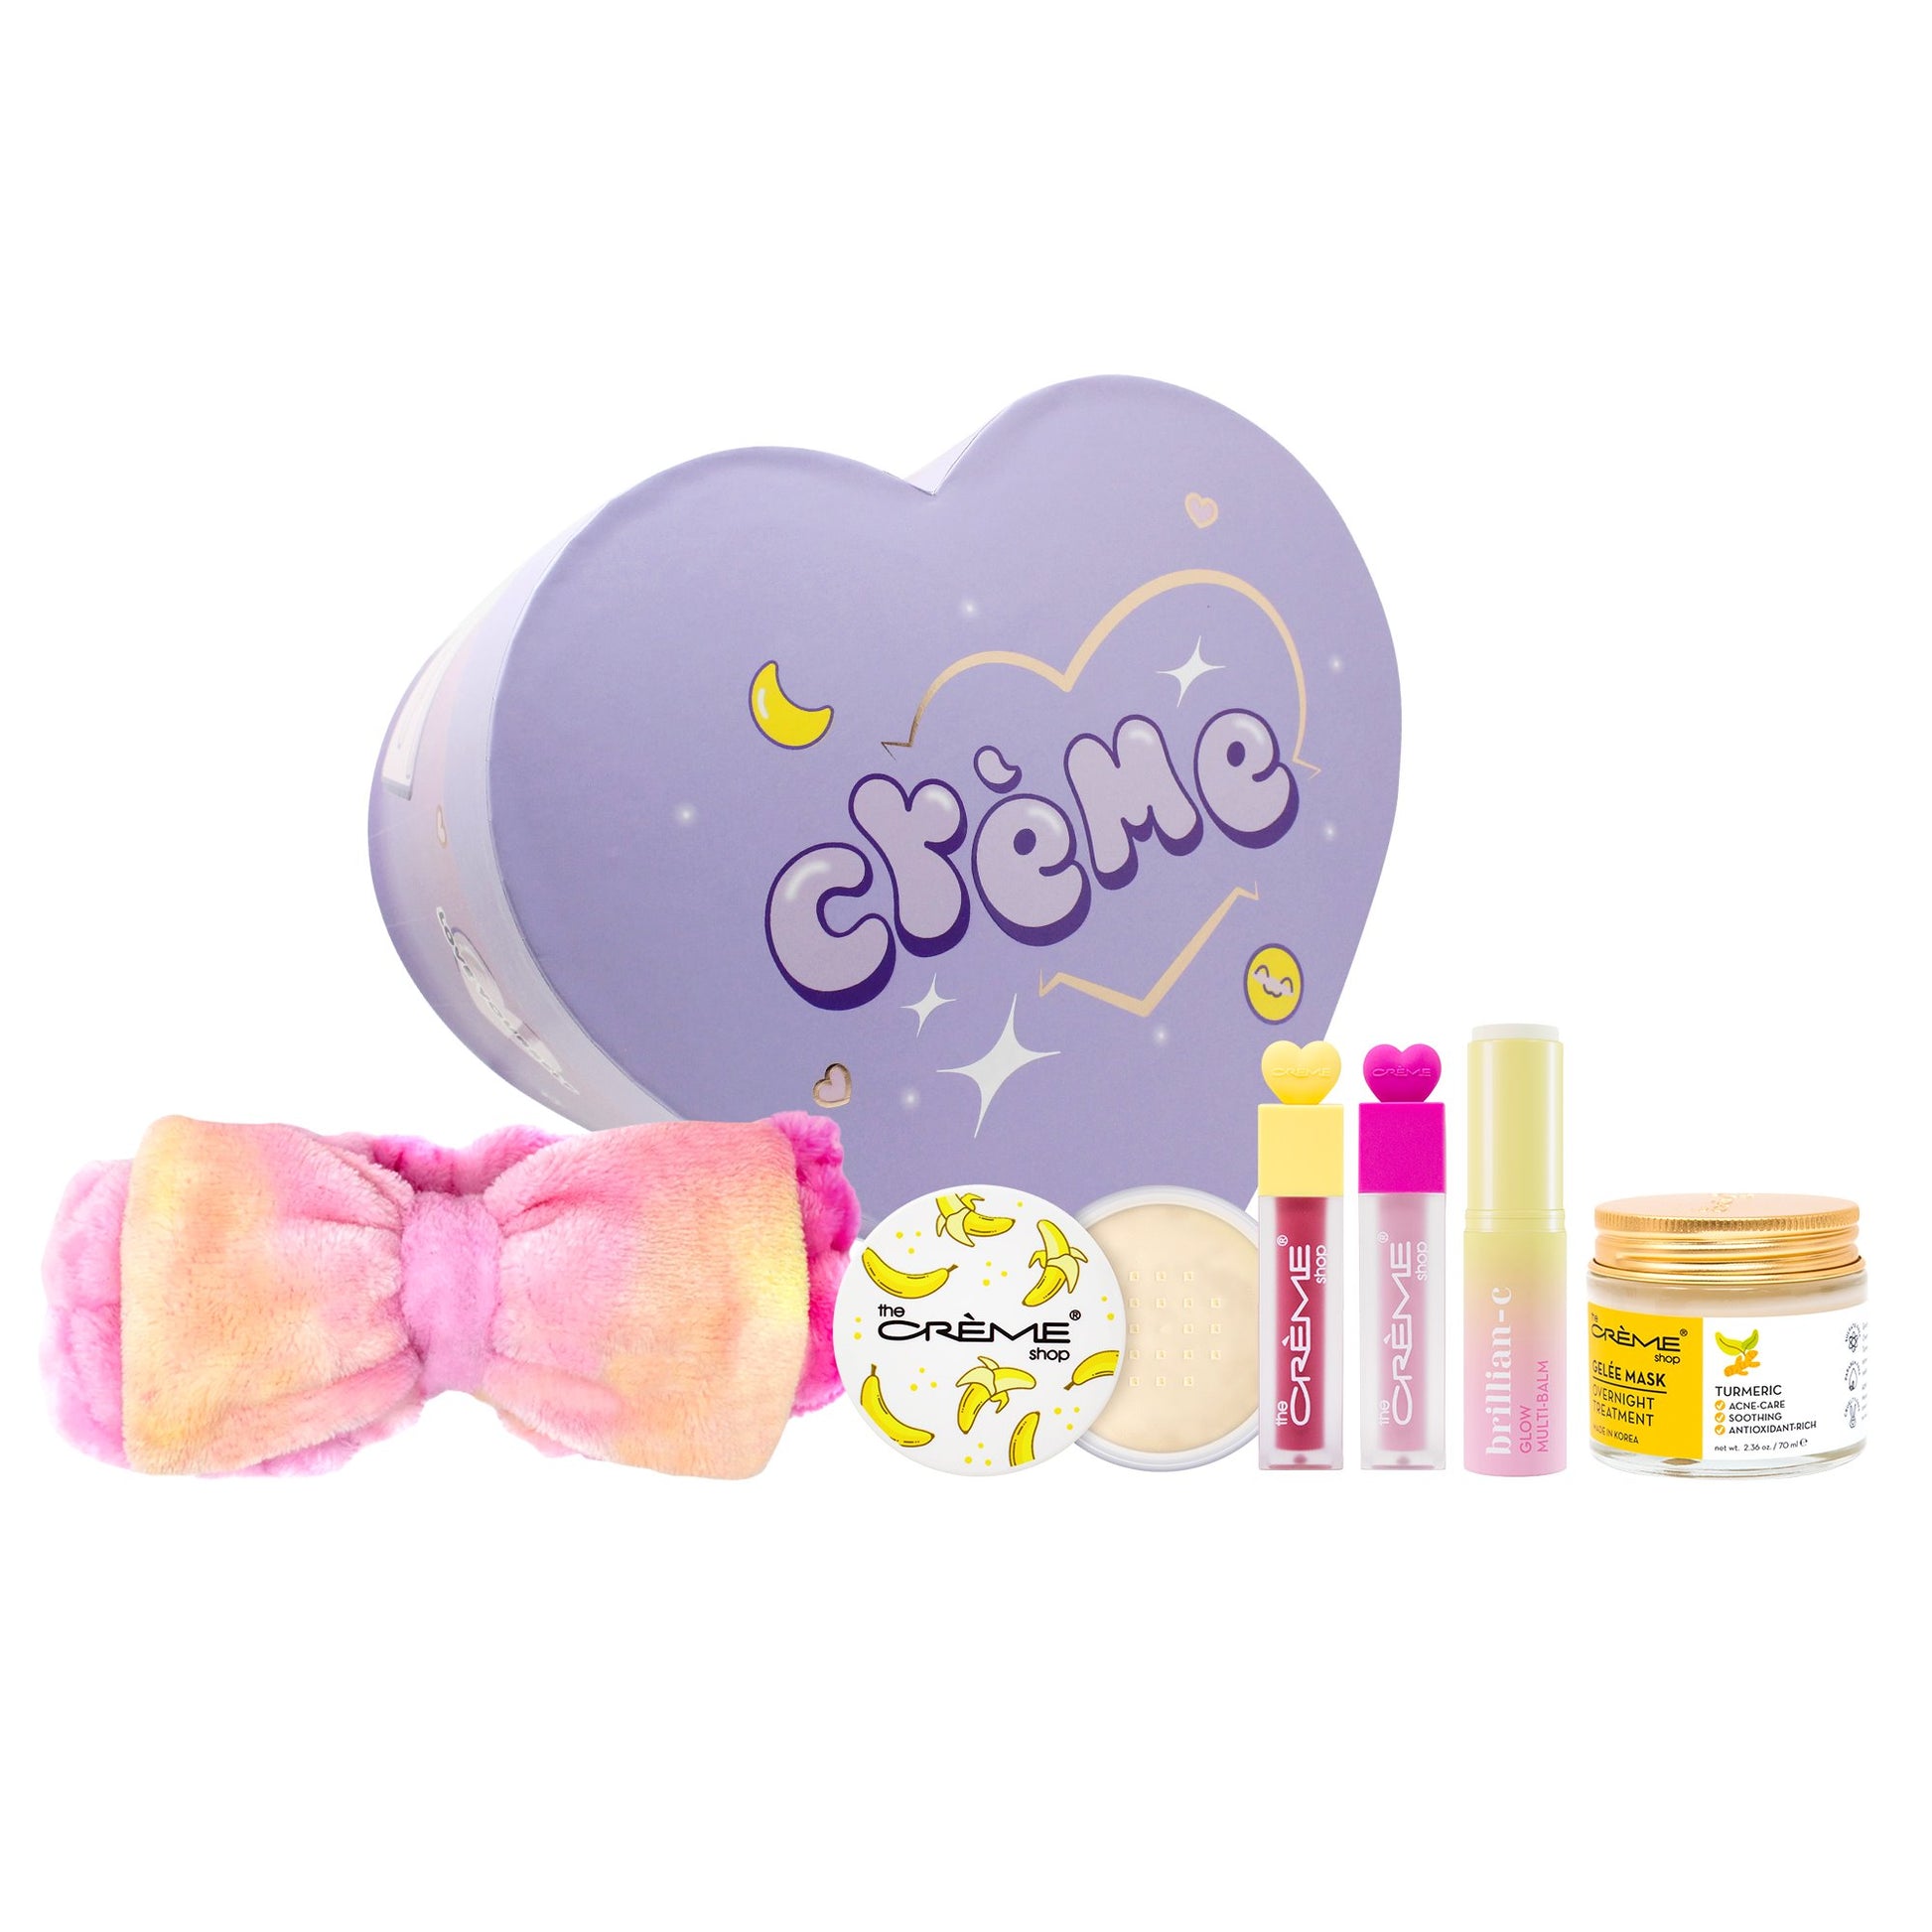 Crème Summer Beauty Box - $81 Value (Limited Edition) Bundles The Crème Shop 